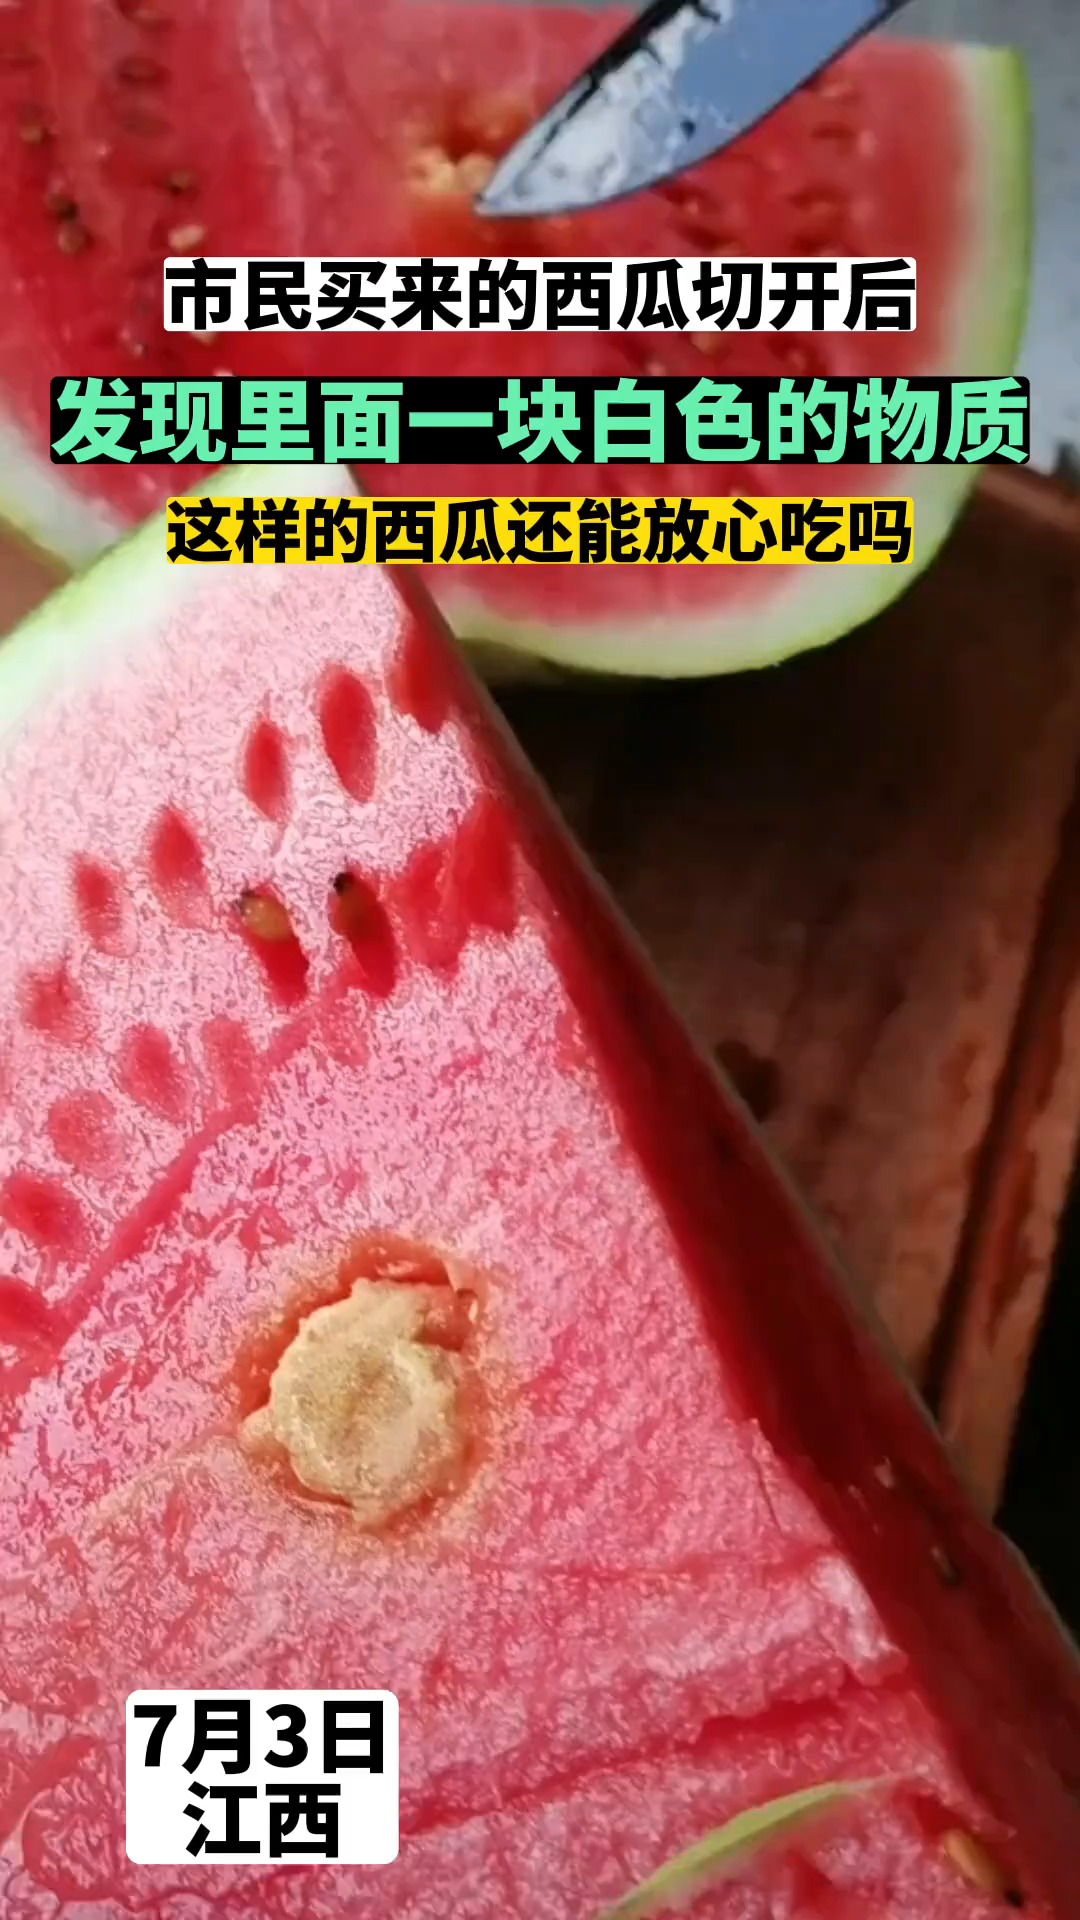 市民买的西瓜里面有一块白色物质，这样的西瓜还能吃么？